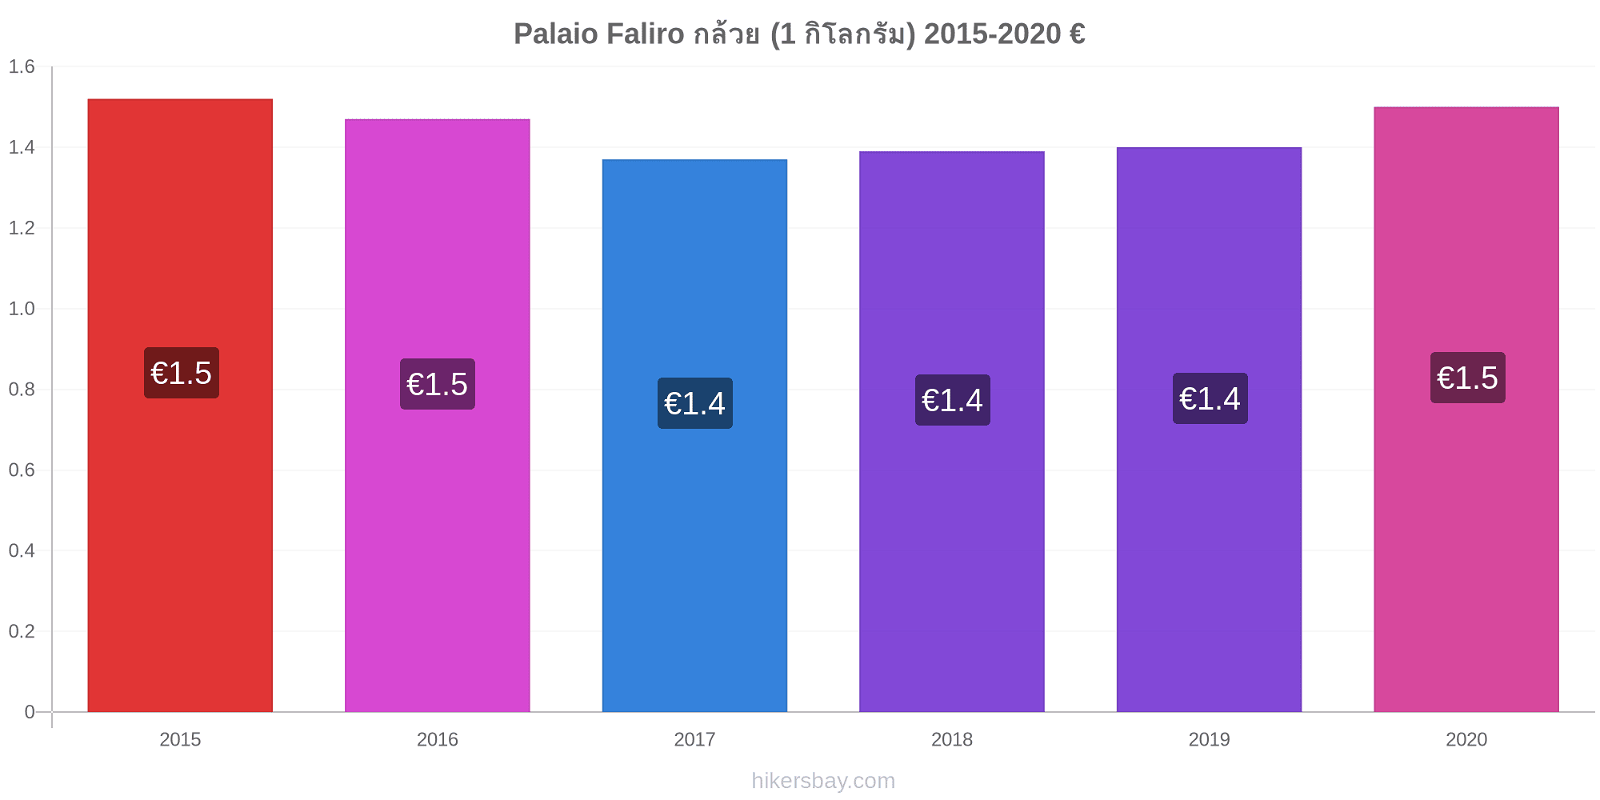 Palaio Faliro การเปลี่ยนแปลงราคา กล้วย (1 กิโลกรัม) hikersbay.com